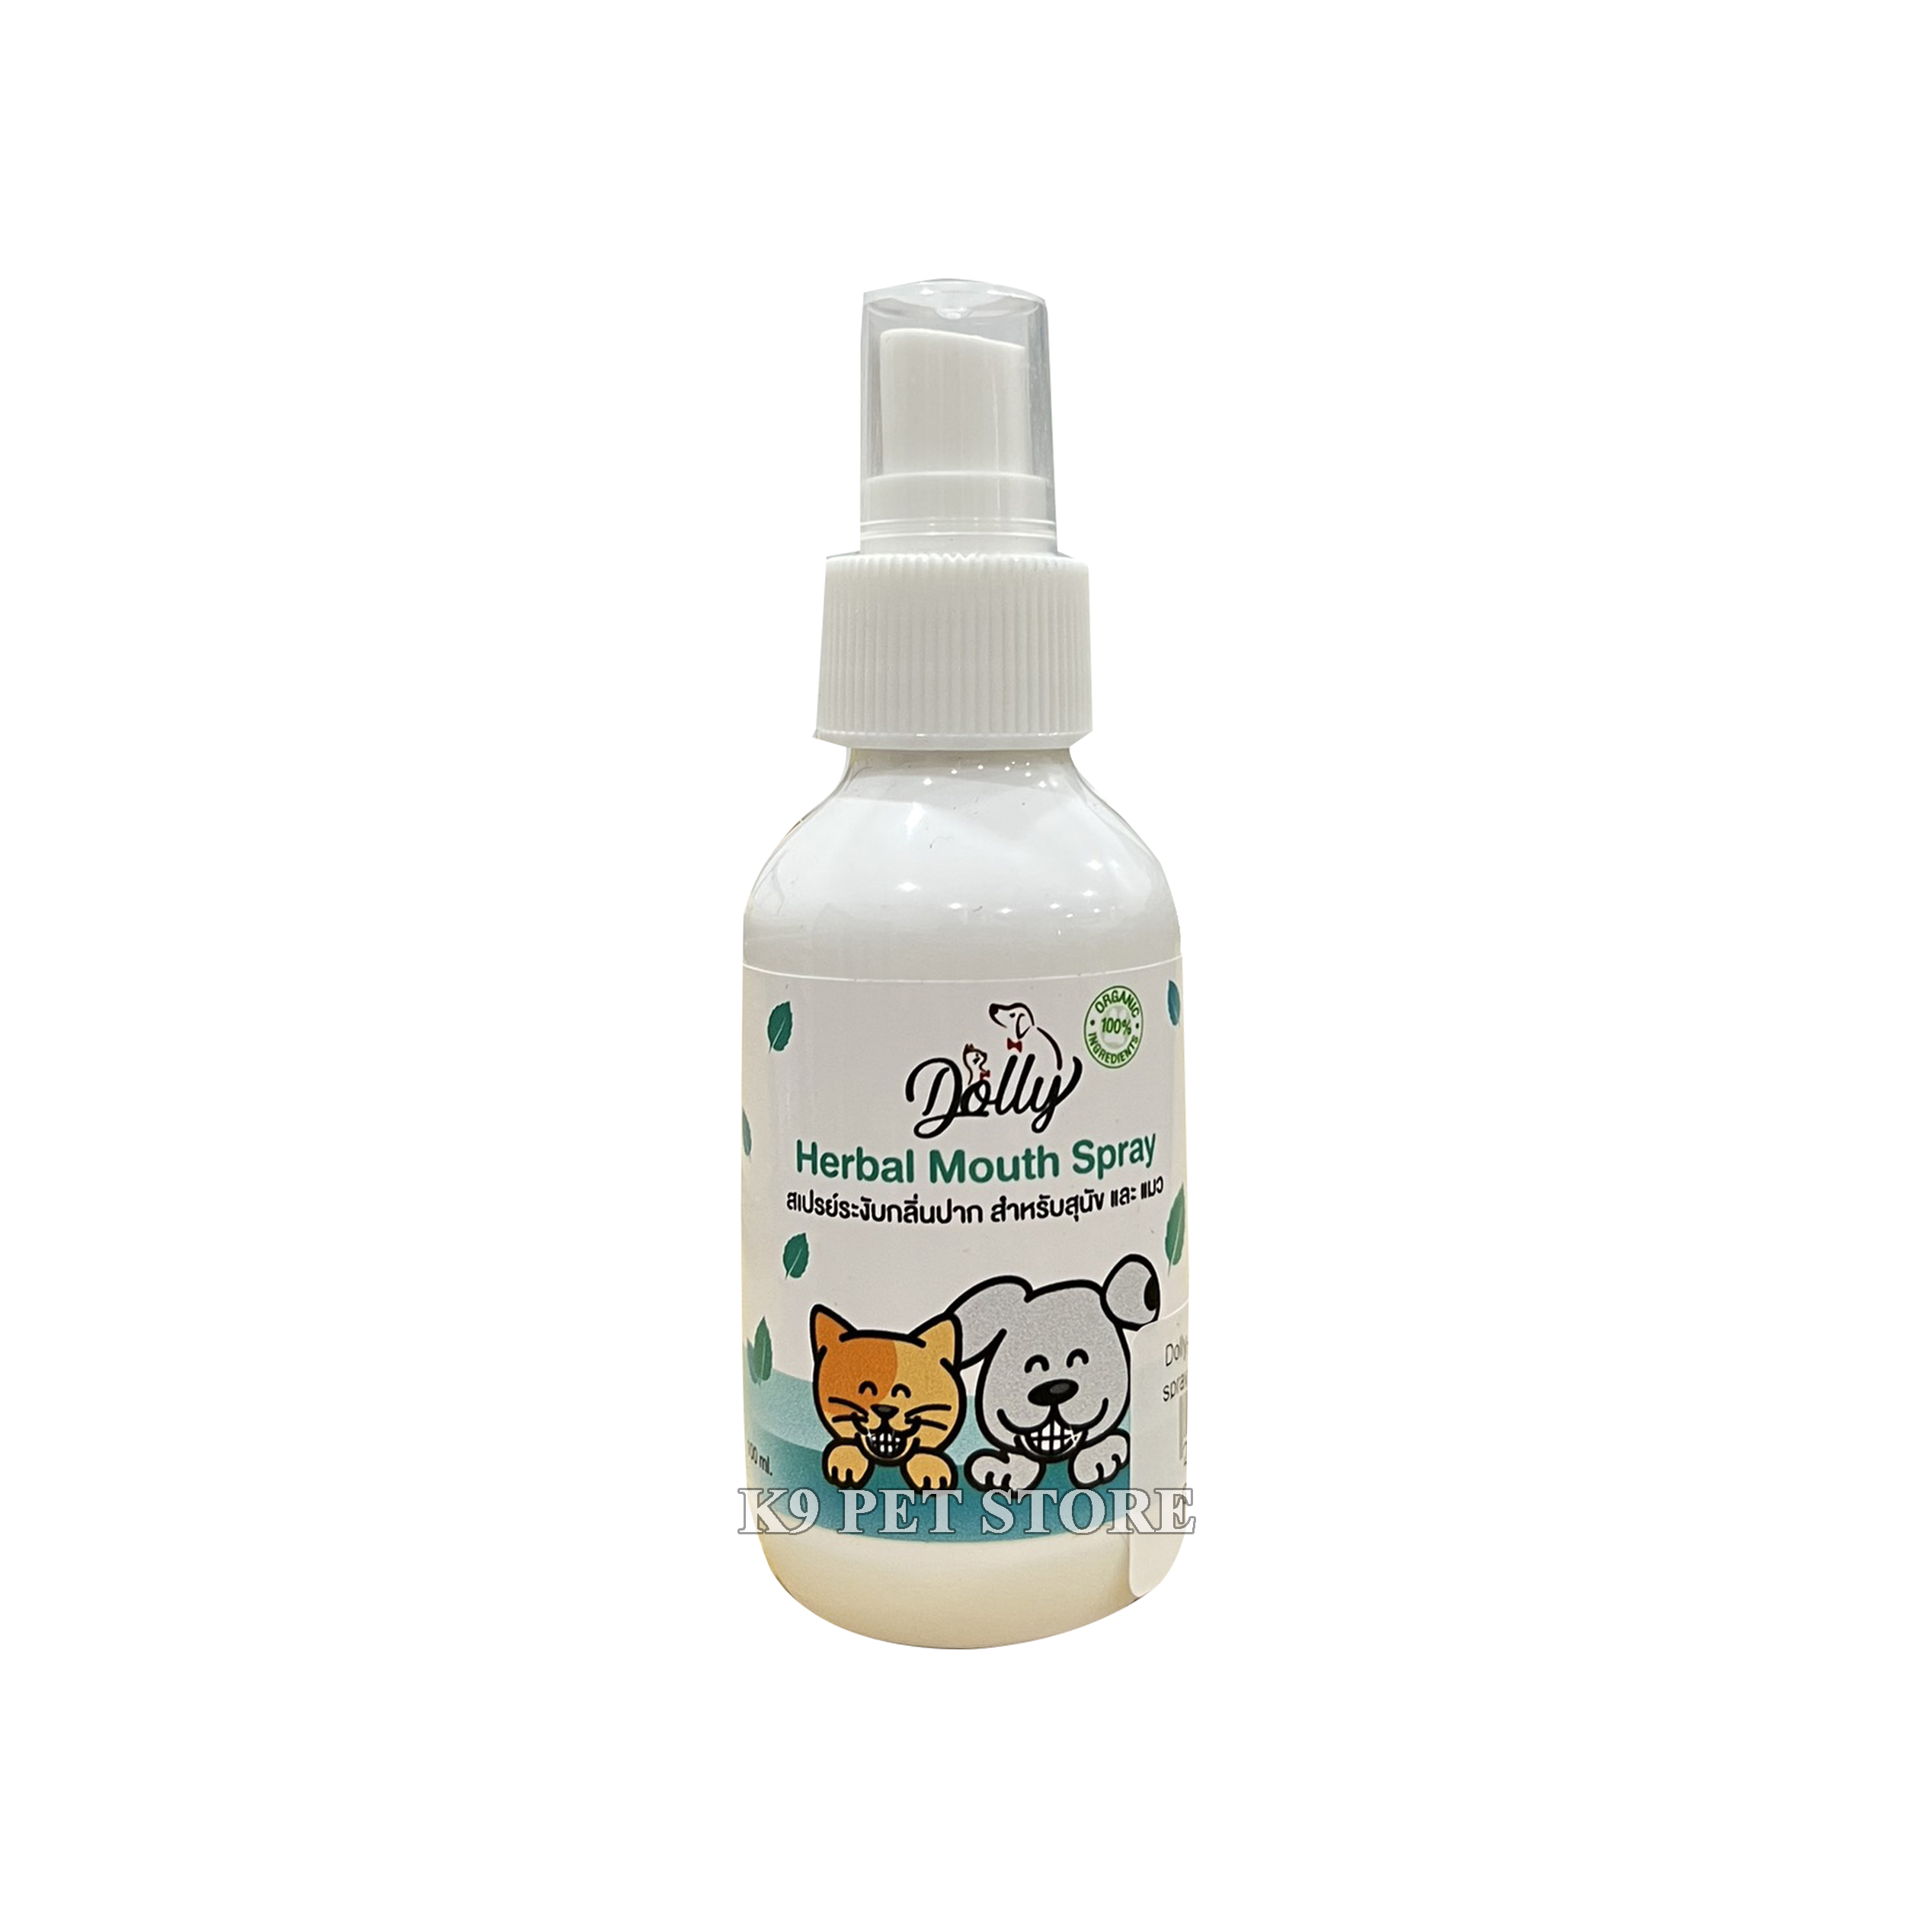 Dolly Herbal Mouth Spray - Xịt thơm miệng thảo dược cho chó, mèo